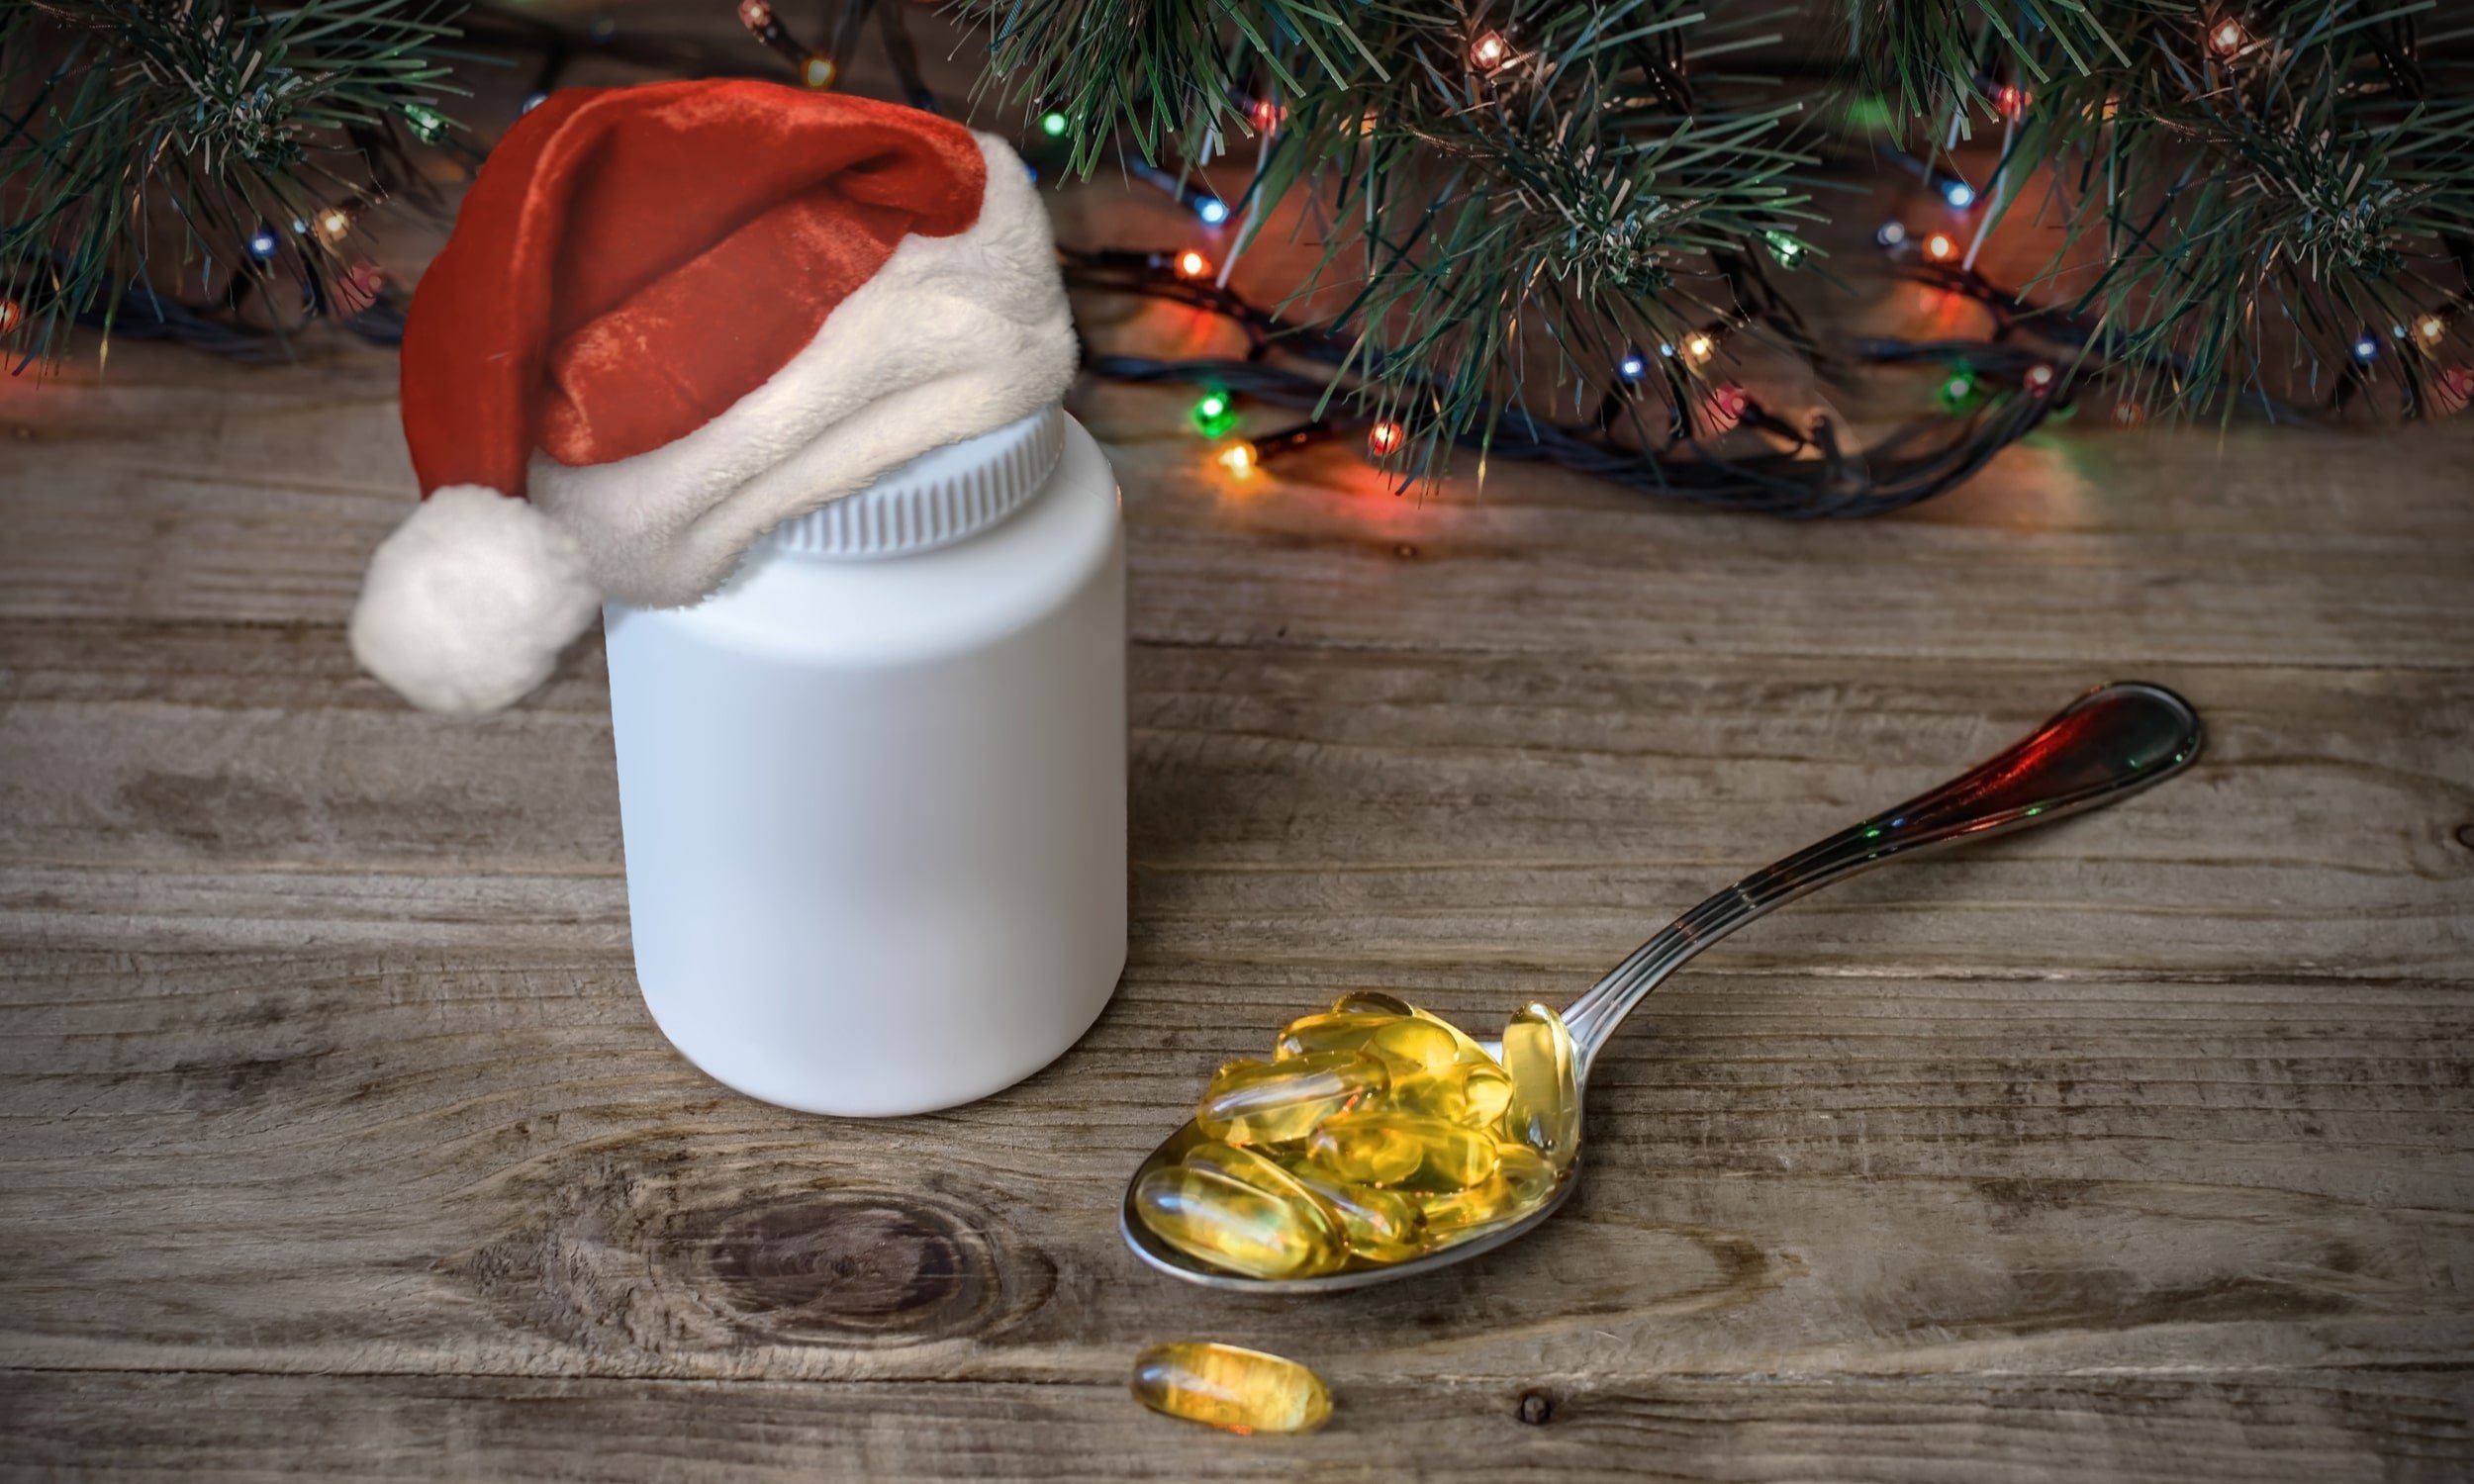 витамины и пищевые добавки в качестве подарка на новый год